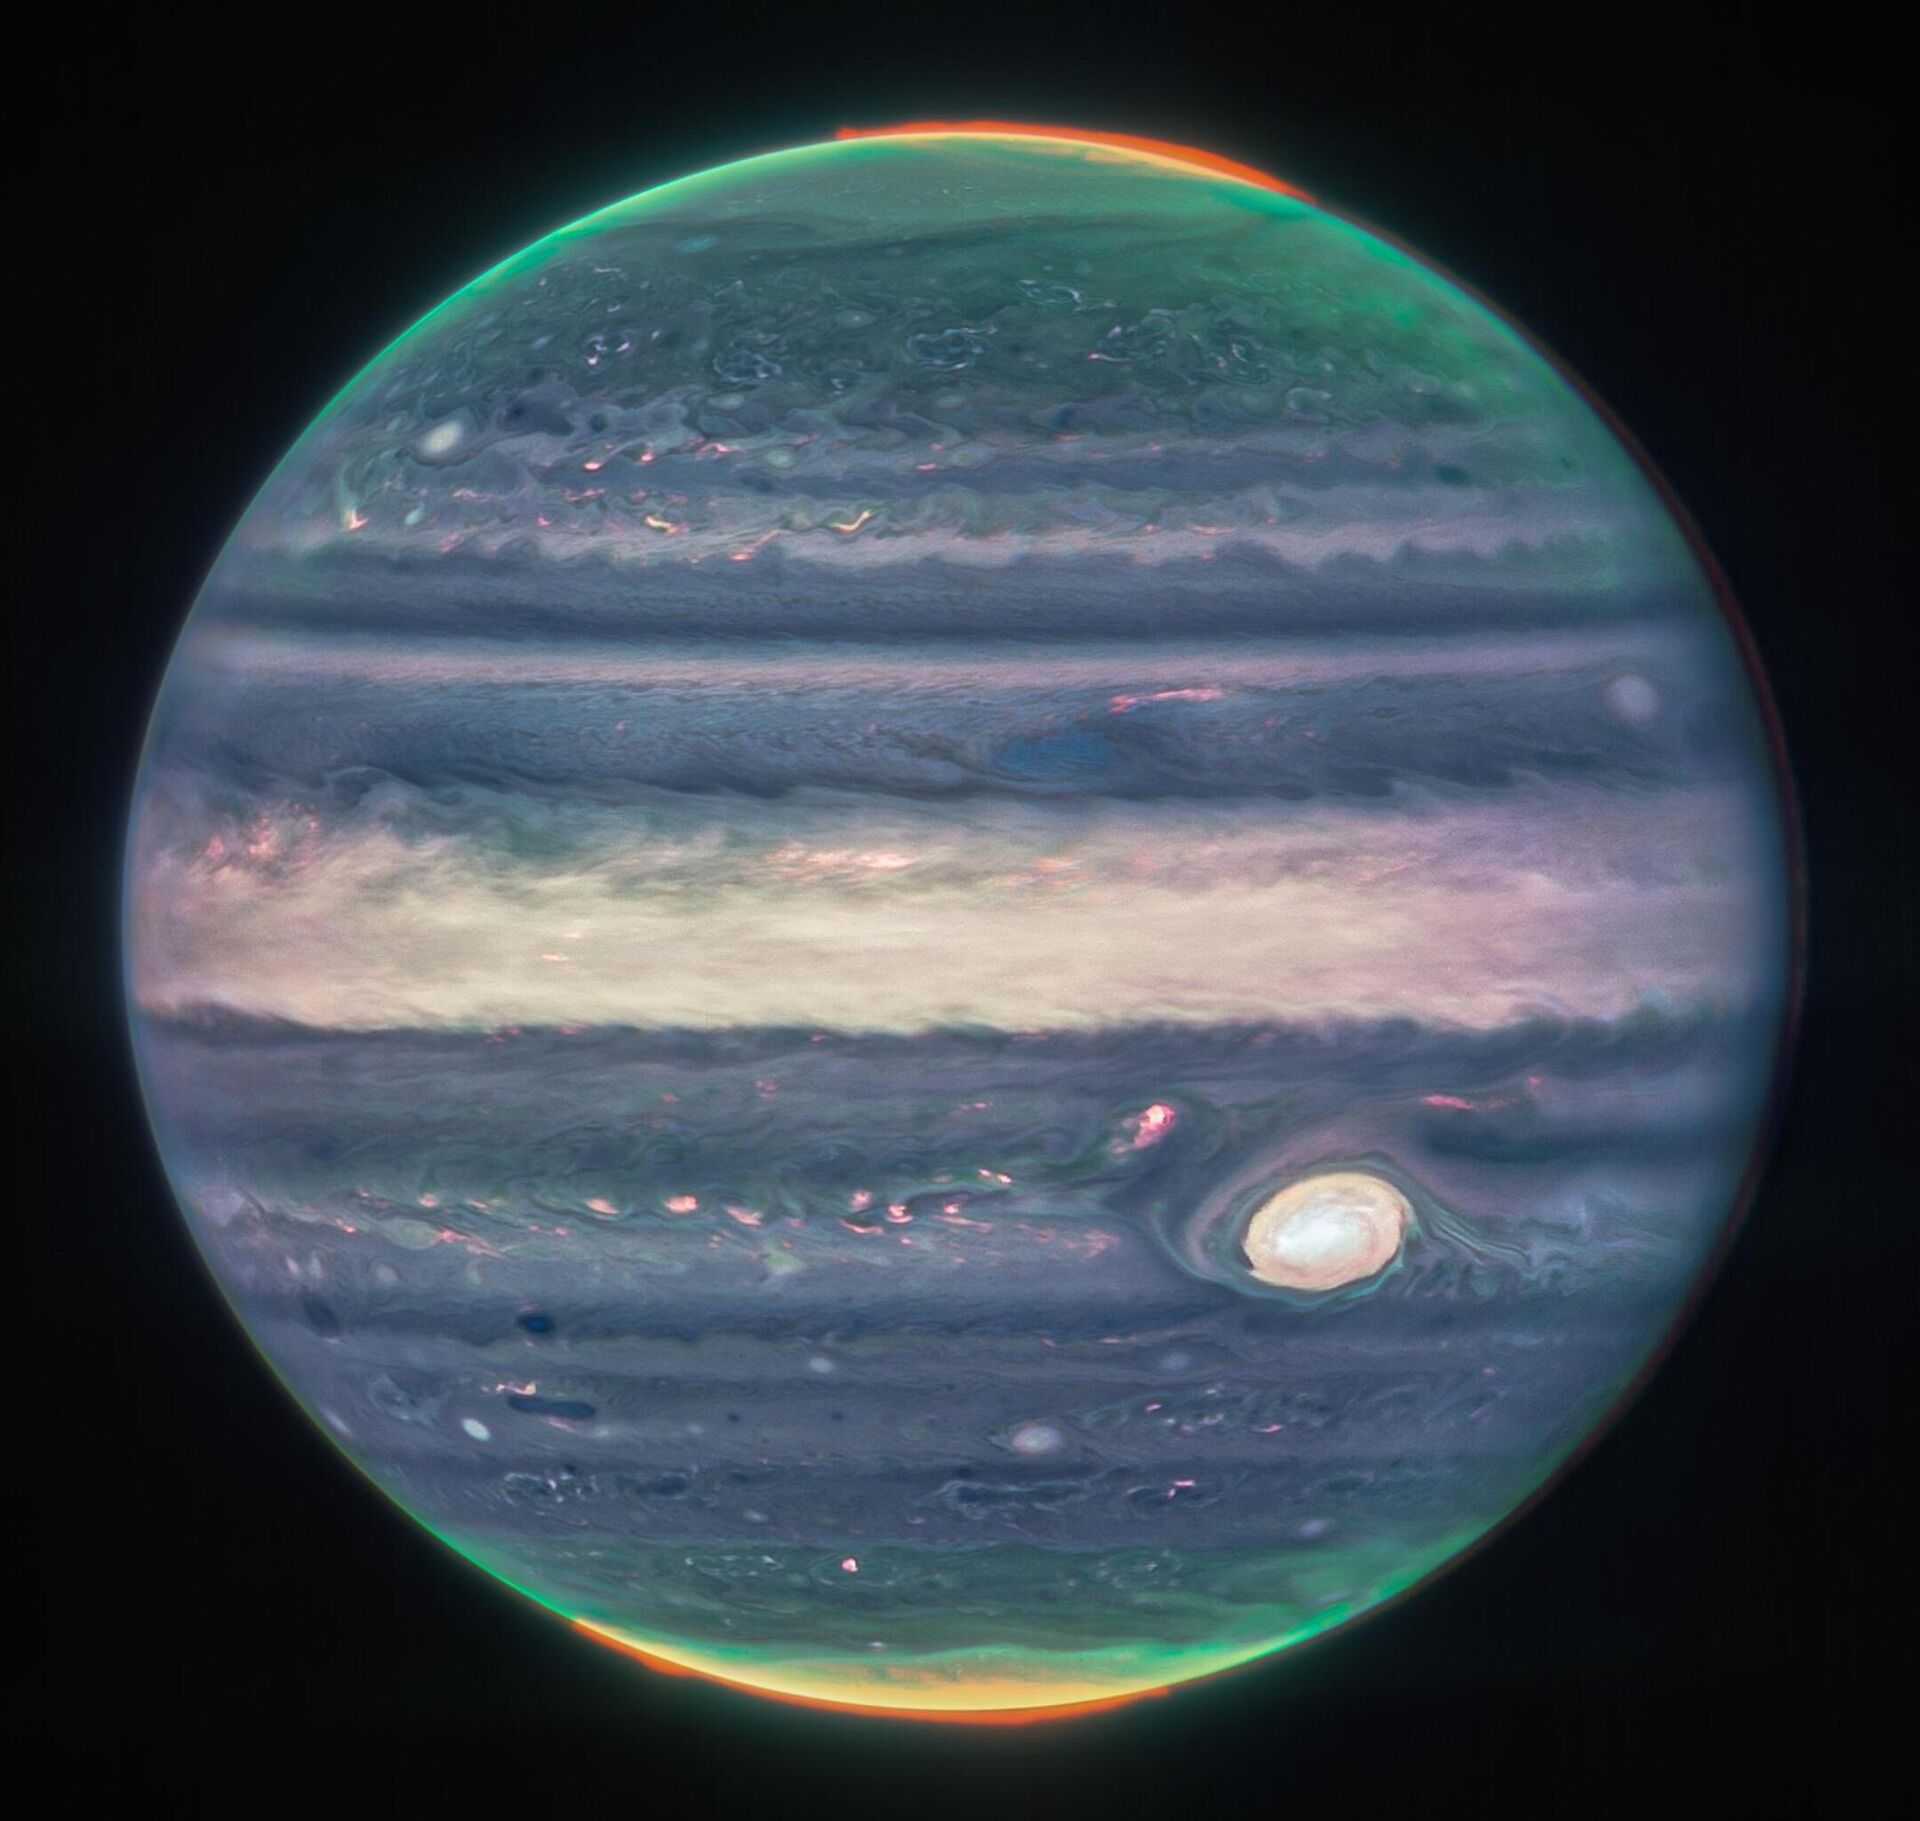 Imagen de Júpiter tomada por el telescopio espacial James Webb en 2022 - Sputnik Mundo, 1920, 23.08.2022